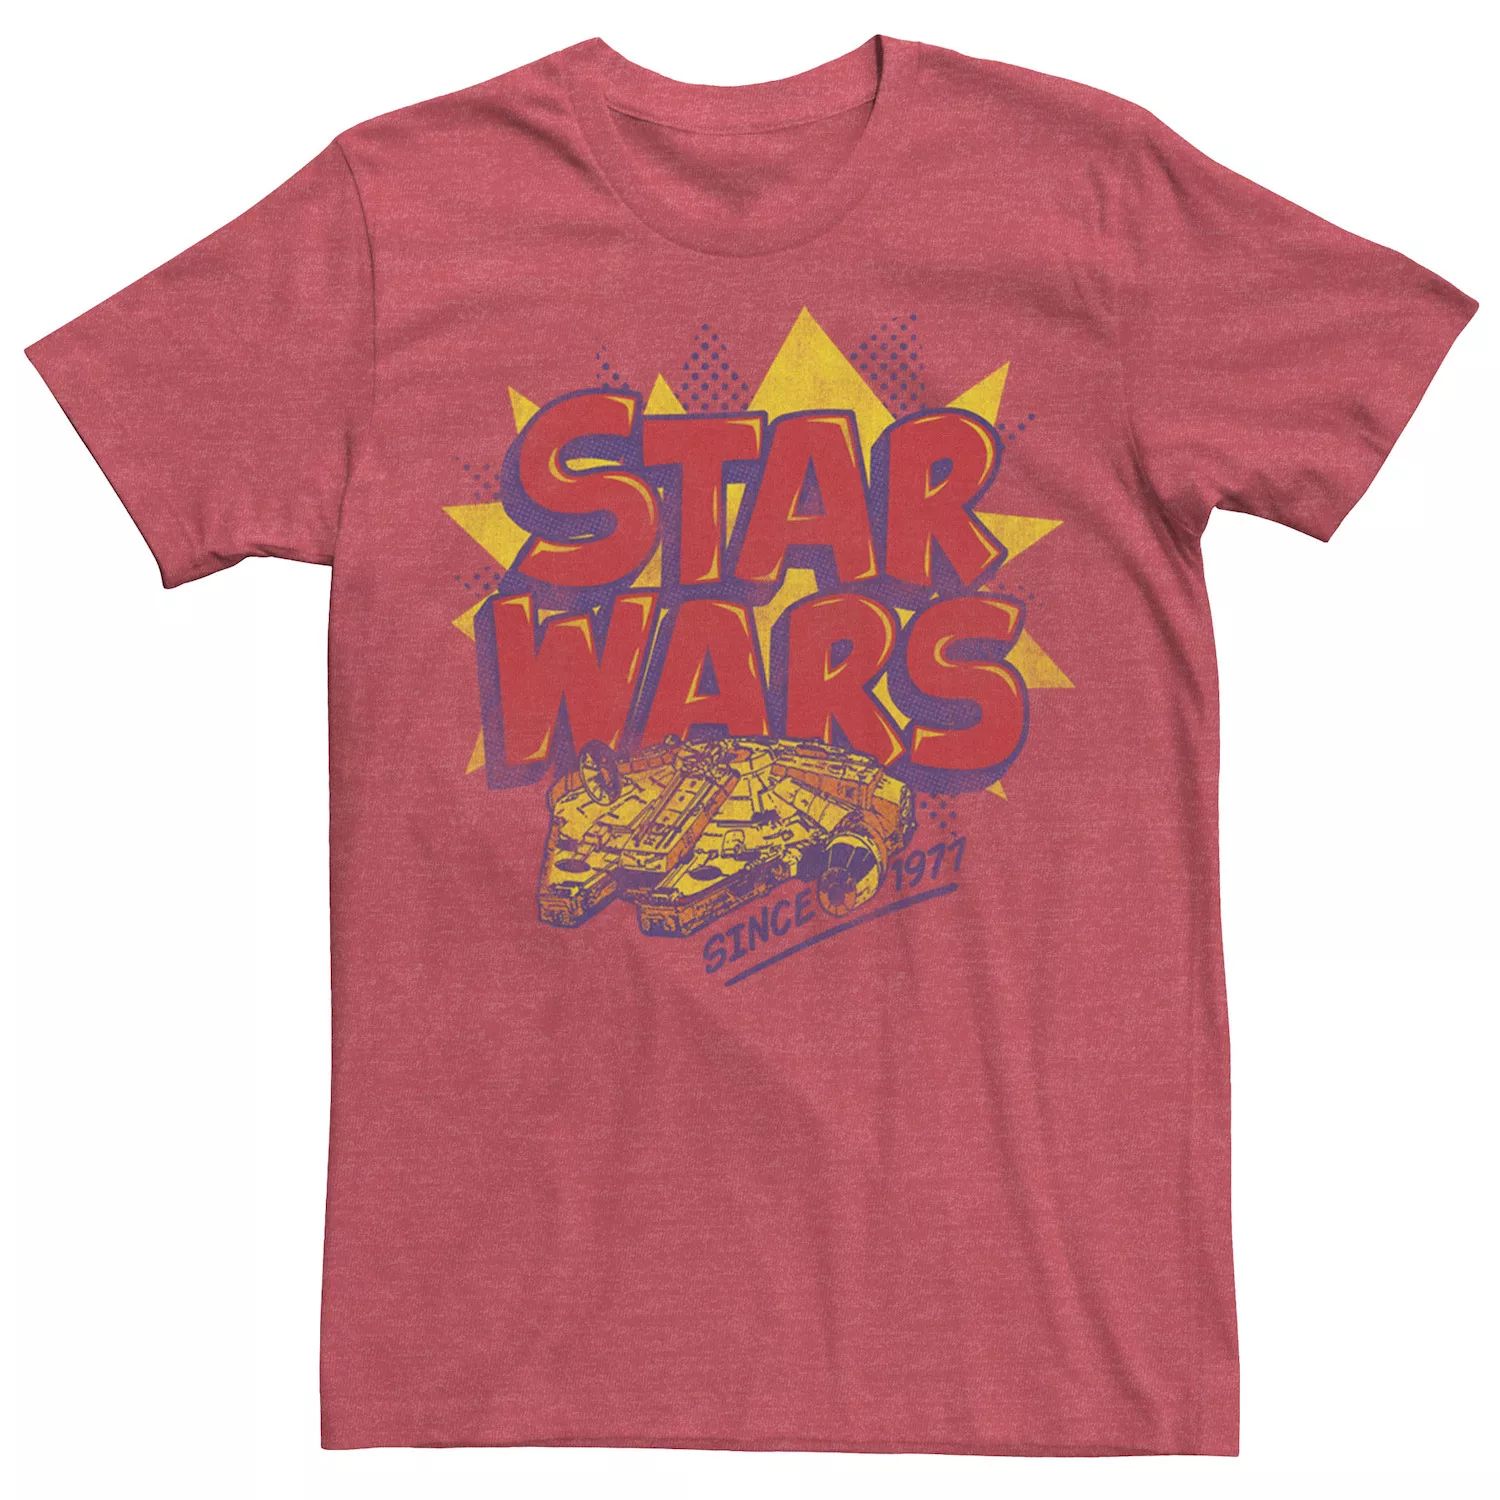 Мужская футболка с логотипом комиксов «Звездные войны: Сокол тысячелетия» Star Wars